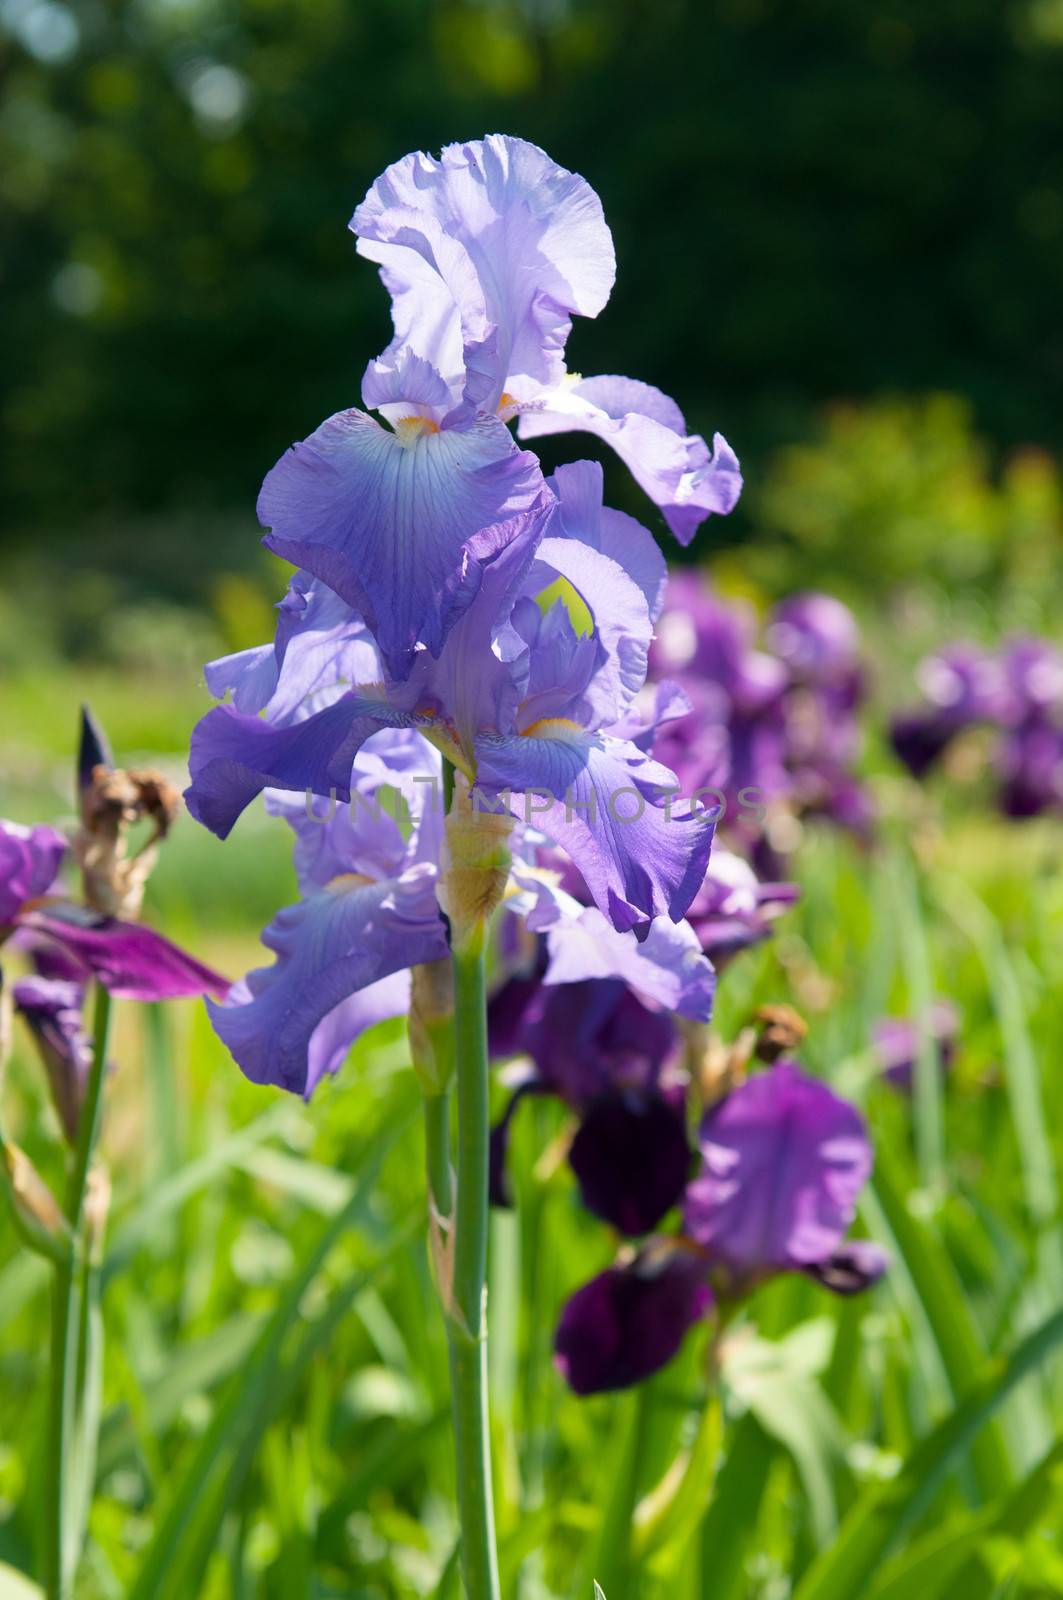 Blue irises blossoming in a garden. Closeup of iris flower.